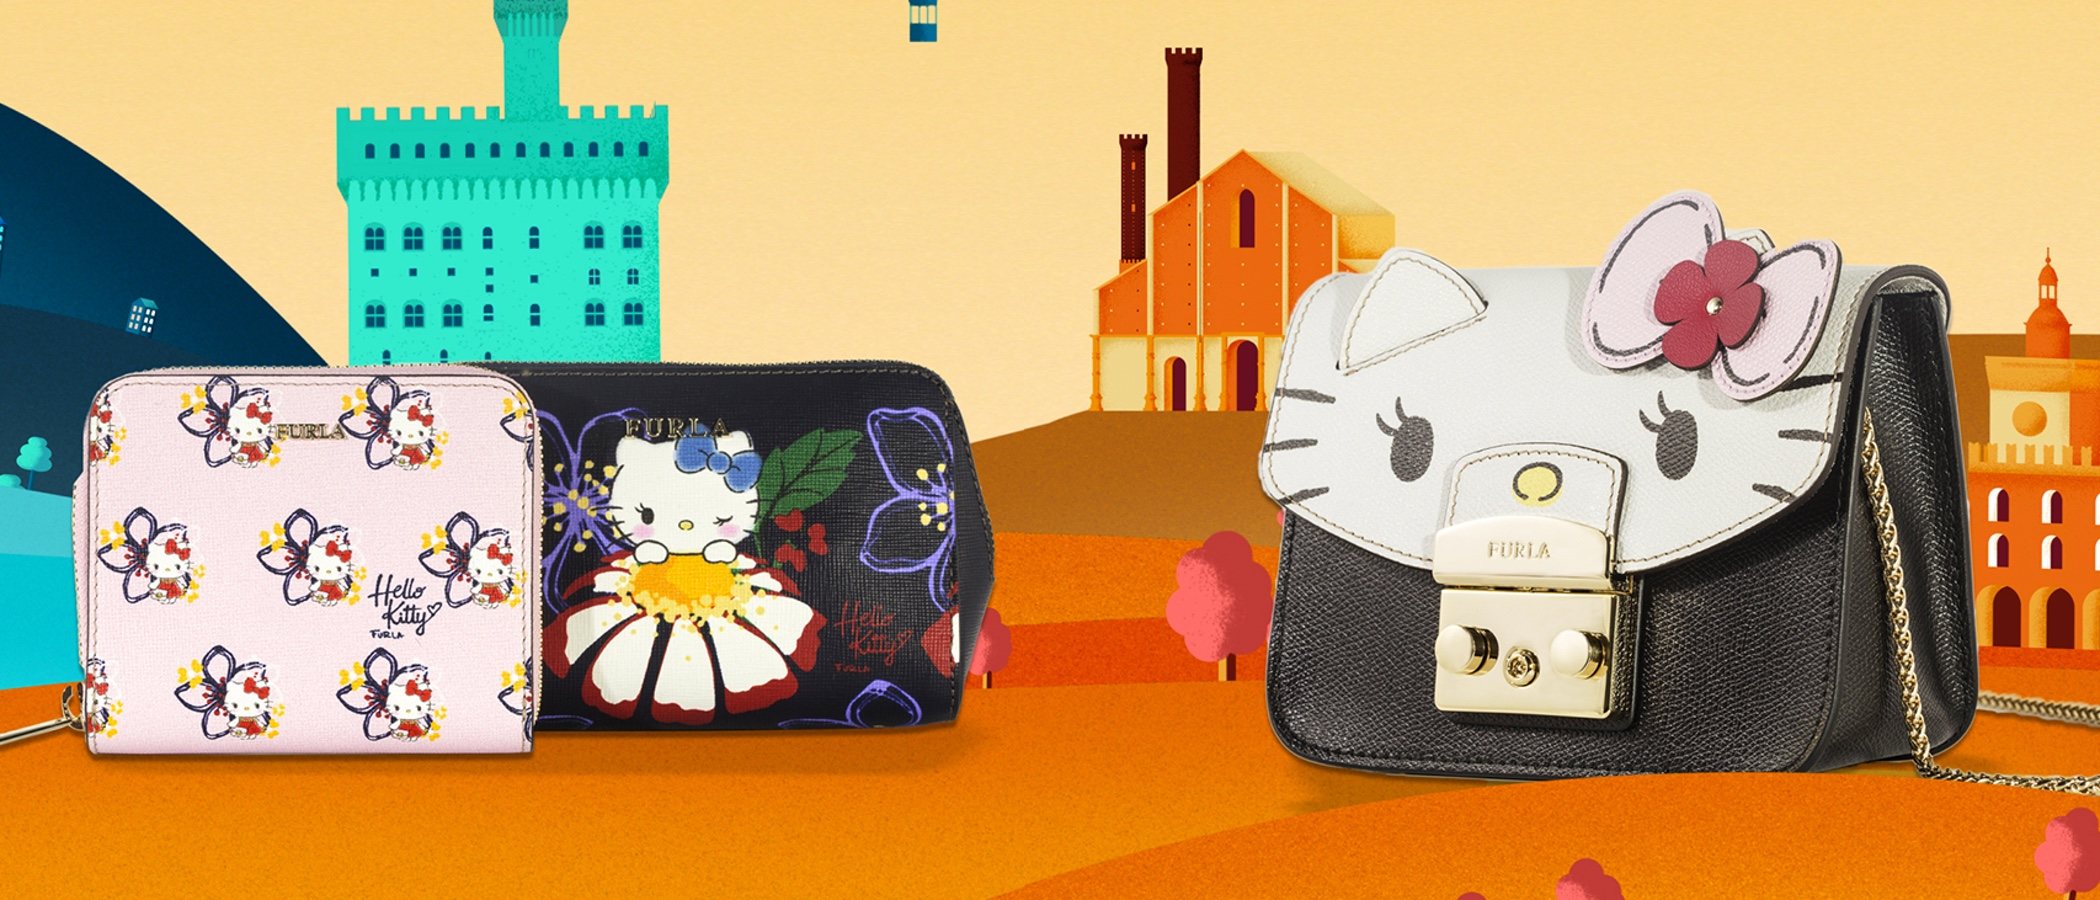 Furla lanza una colección cápsula muy especial dedicada a Hello Kitty